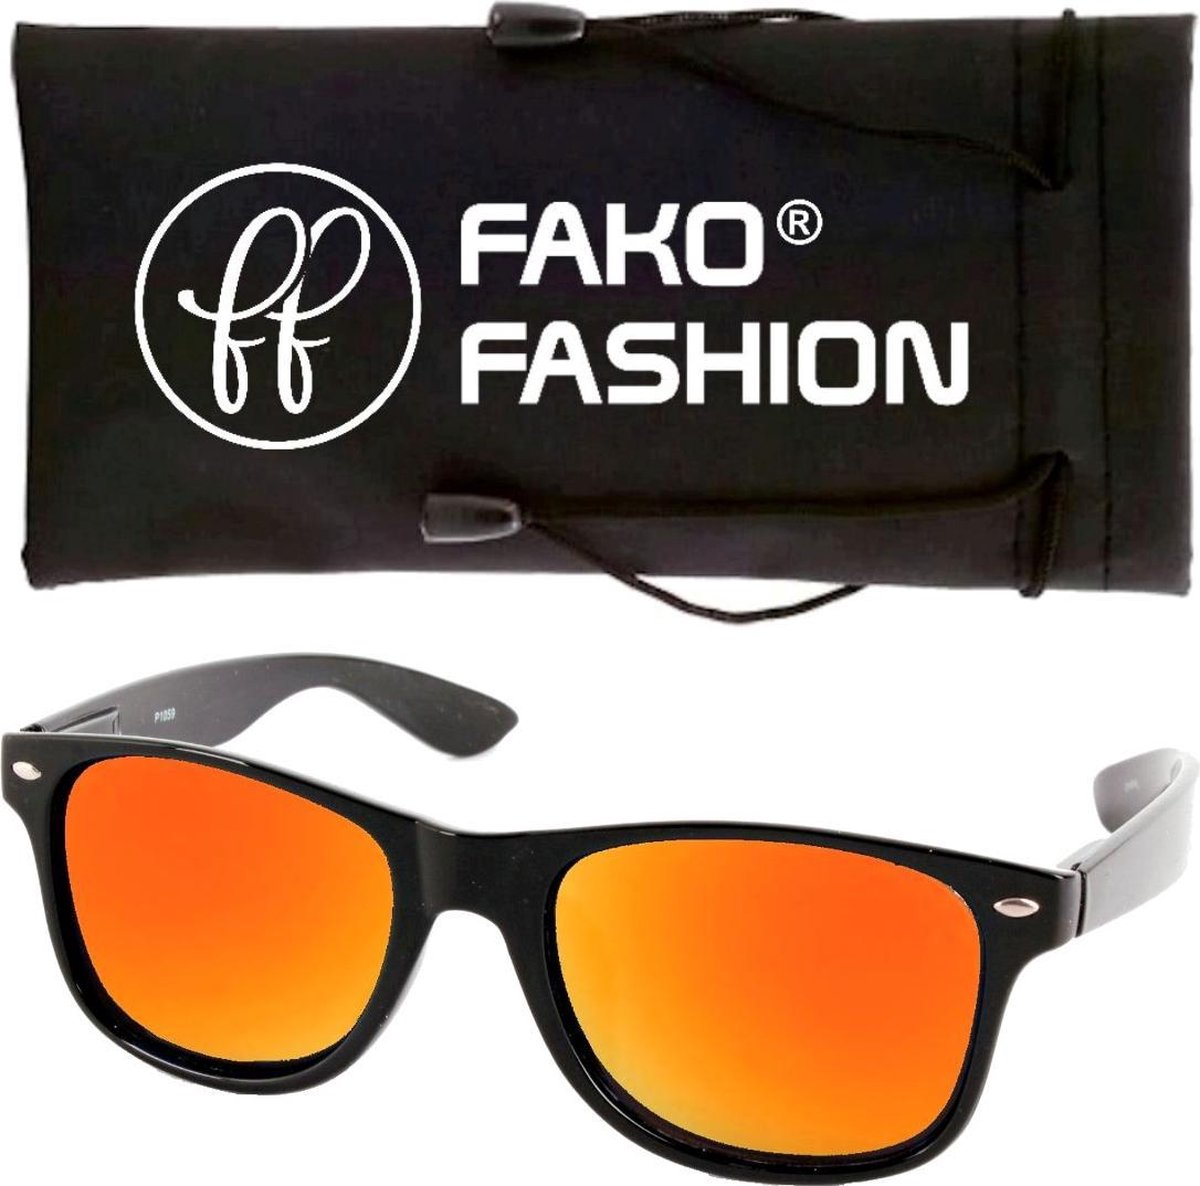 Fako Fashion® - Zonnebril - Zwart - Spiegel Goud/Rood